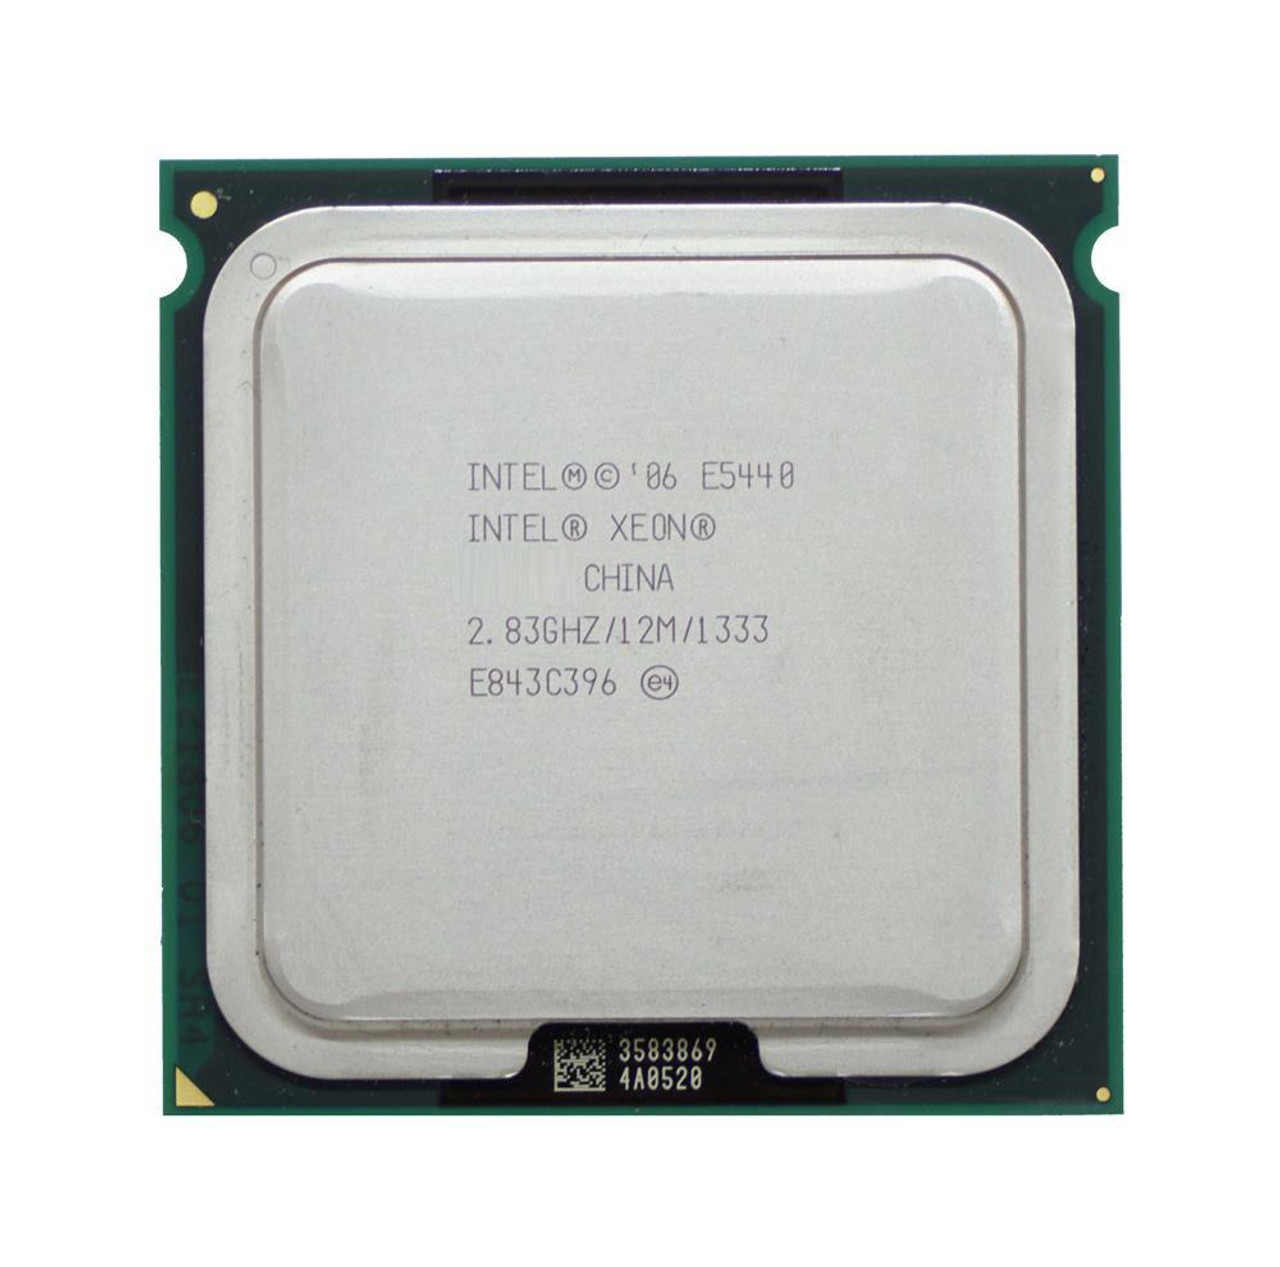 Intel Server CPU BX80574E5440A XEON E5440 QC LGA771 2.83G 12MB 1333MHZ  Box Active 1U